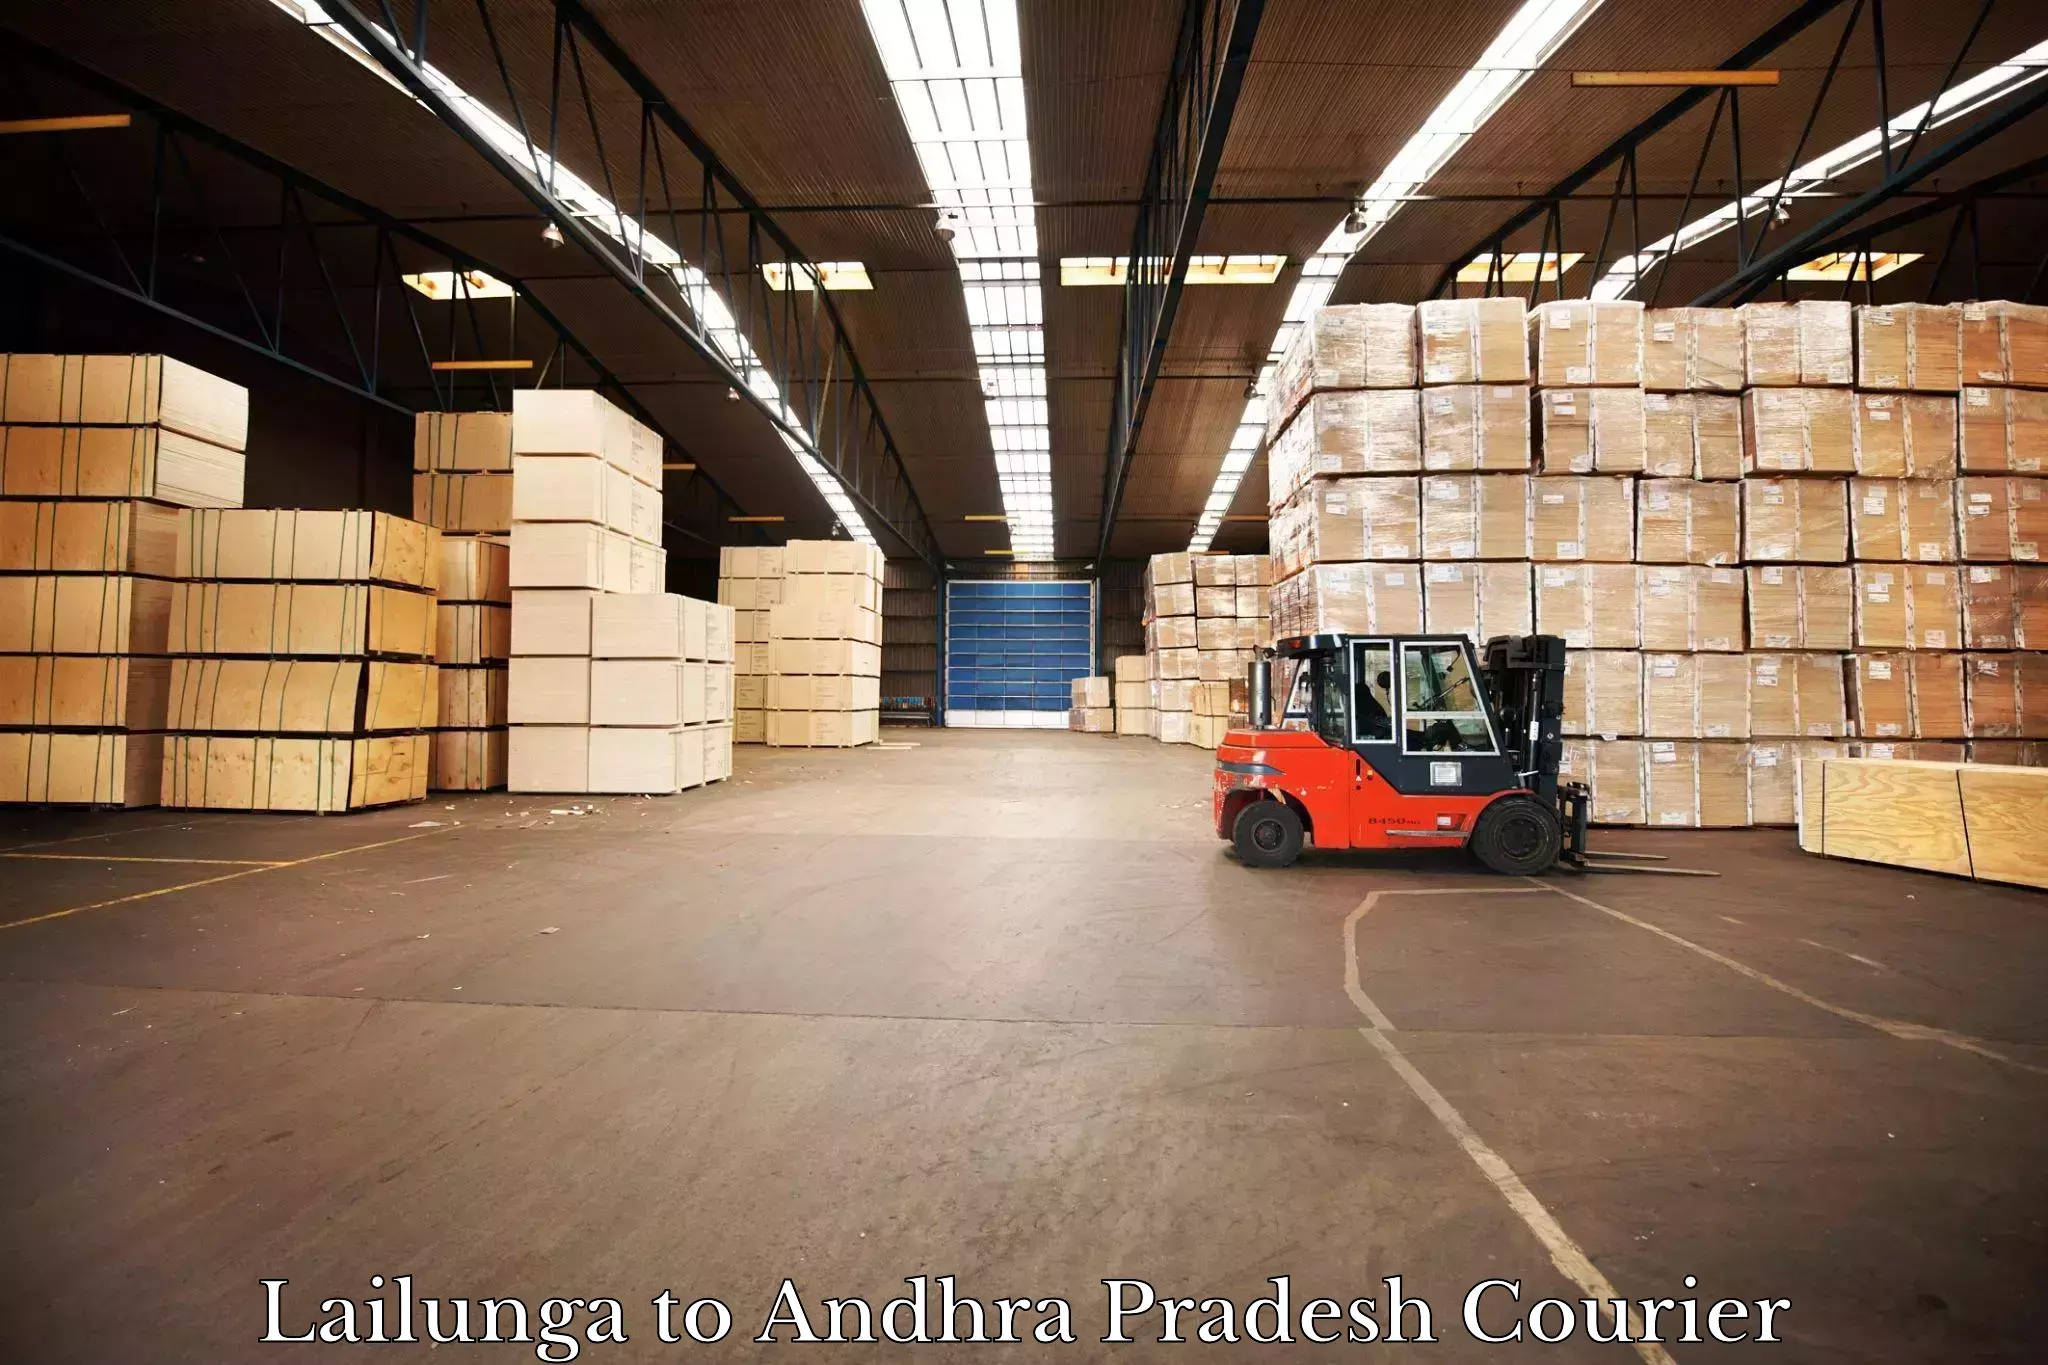 Expedited shipping methods Lailunga to Kakinada